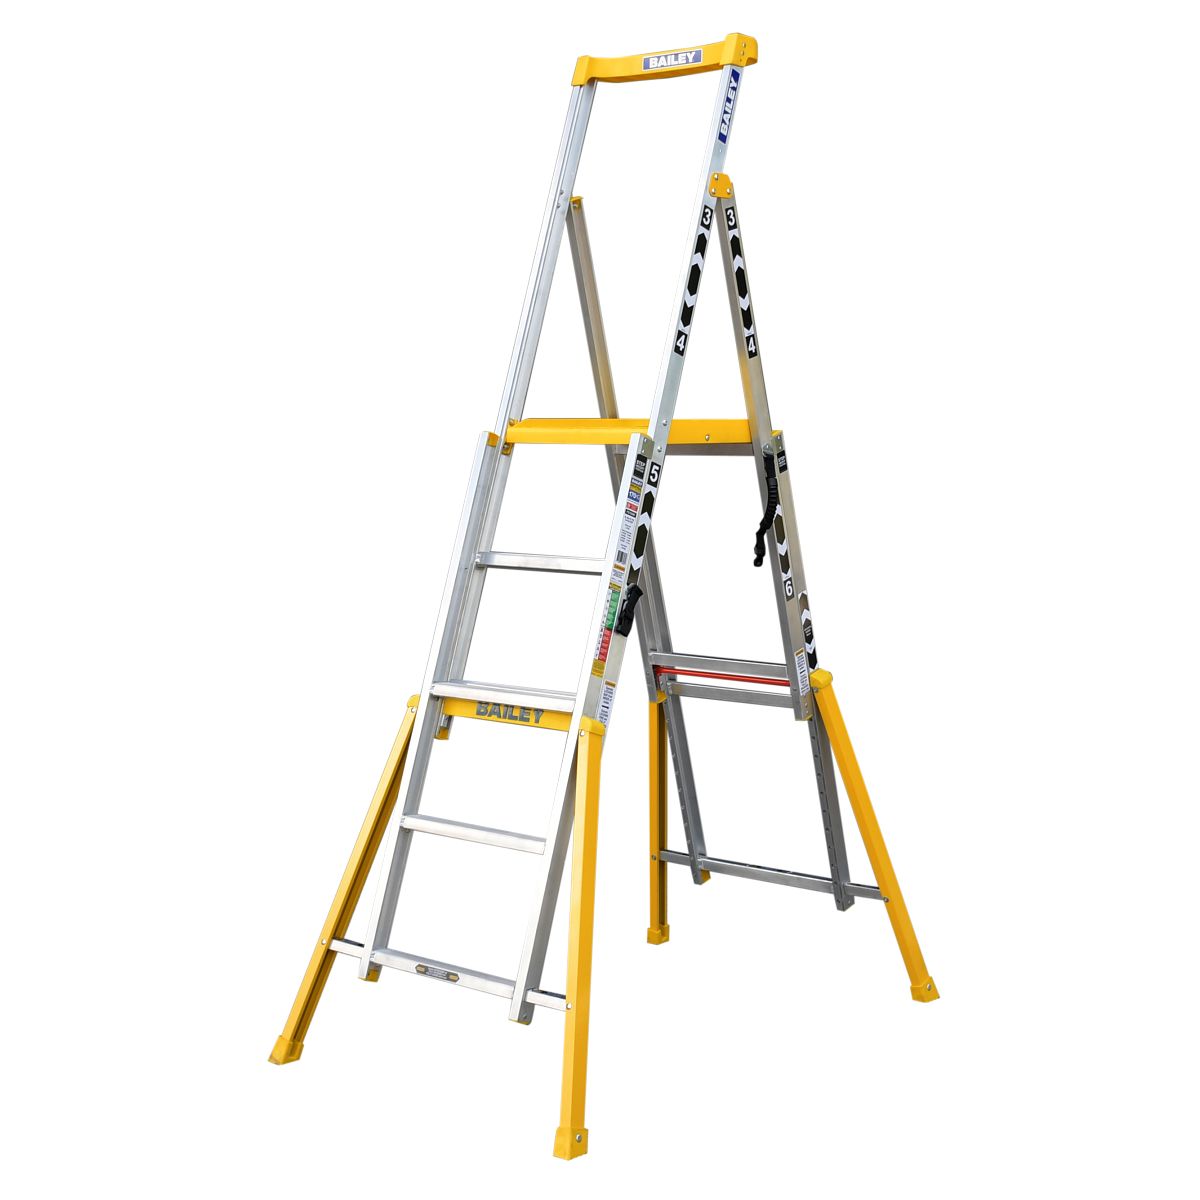 Adjustable Height Platform 3-6 Step Ladder 170Kg Bailey